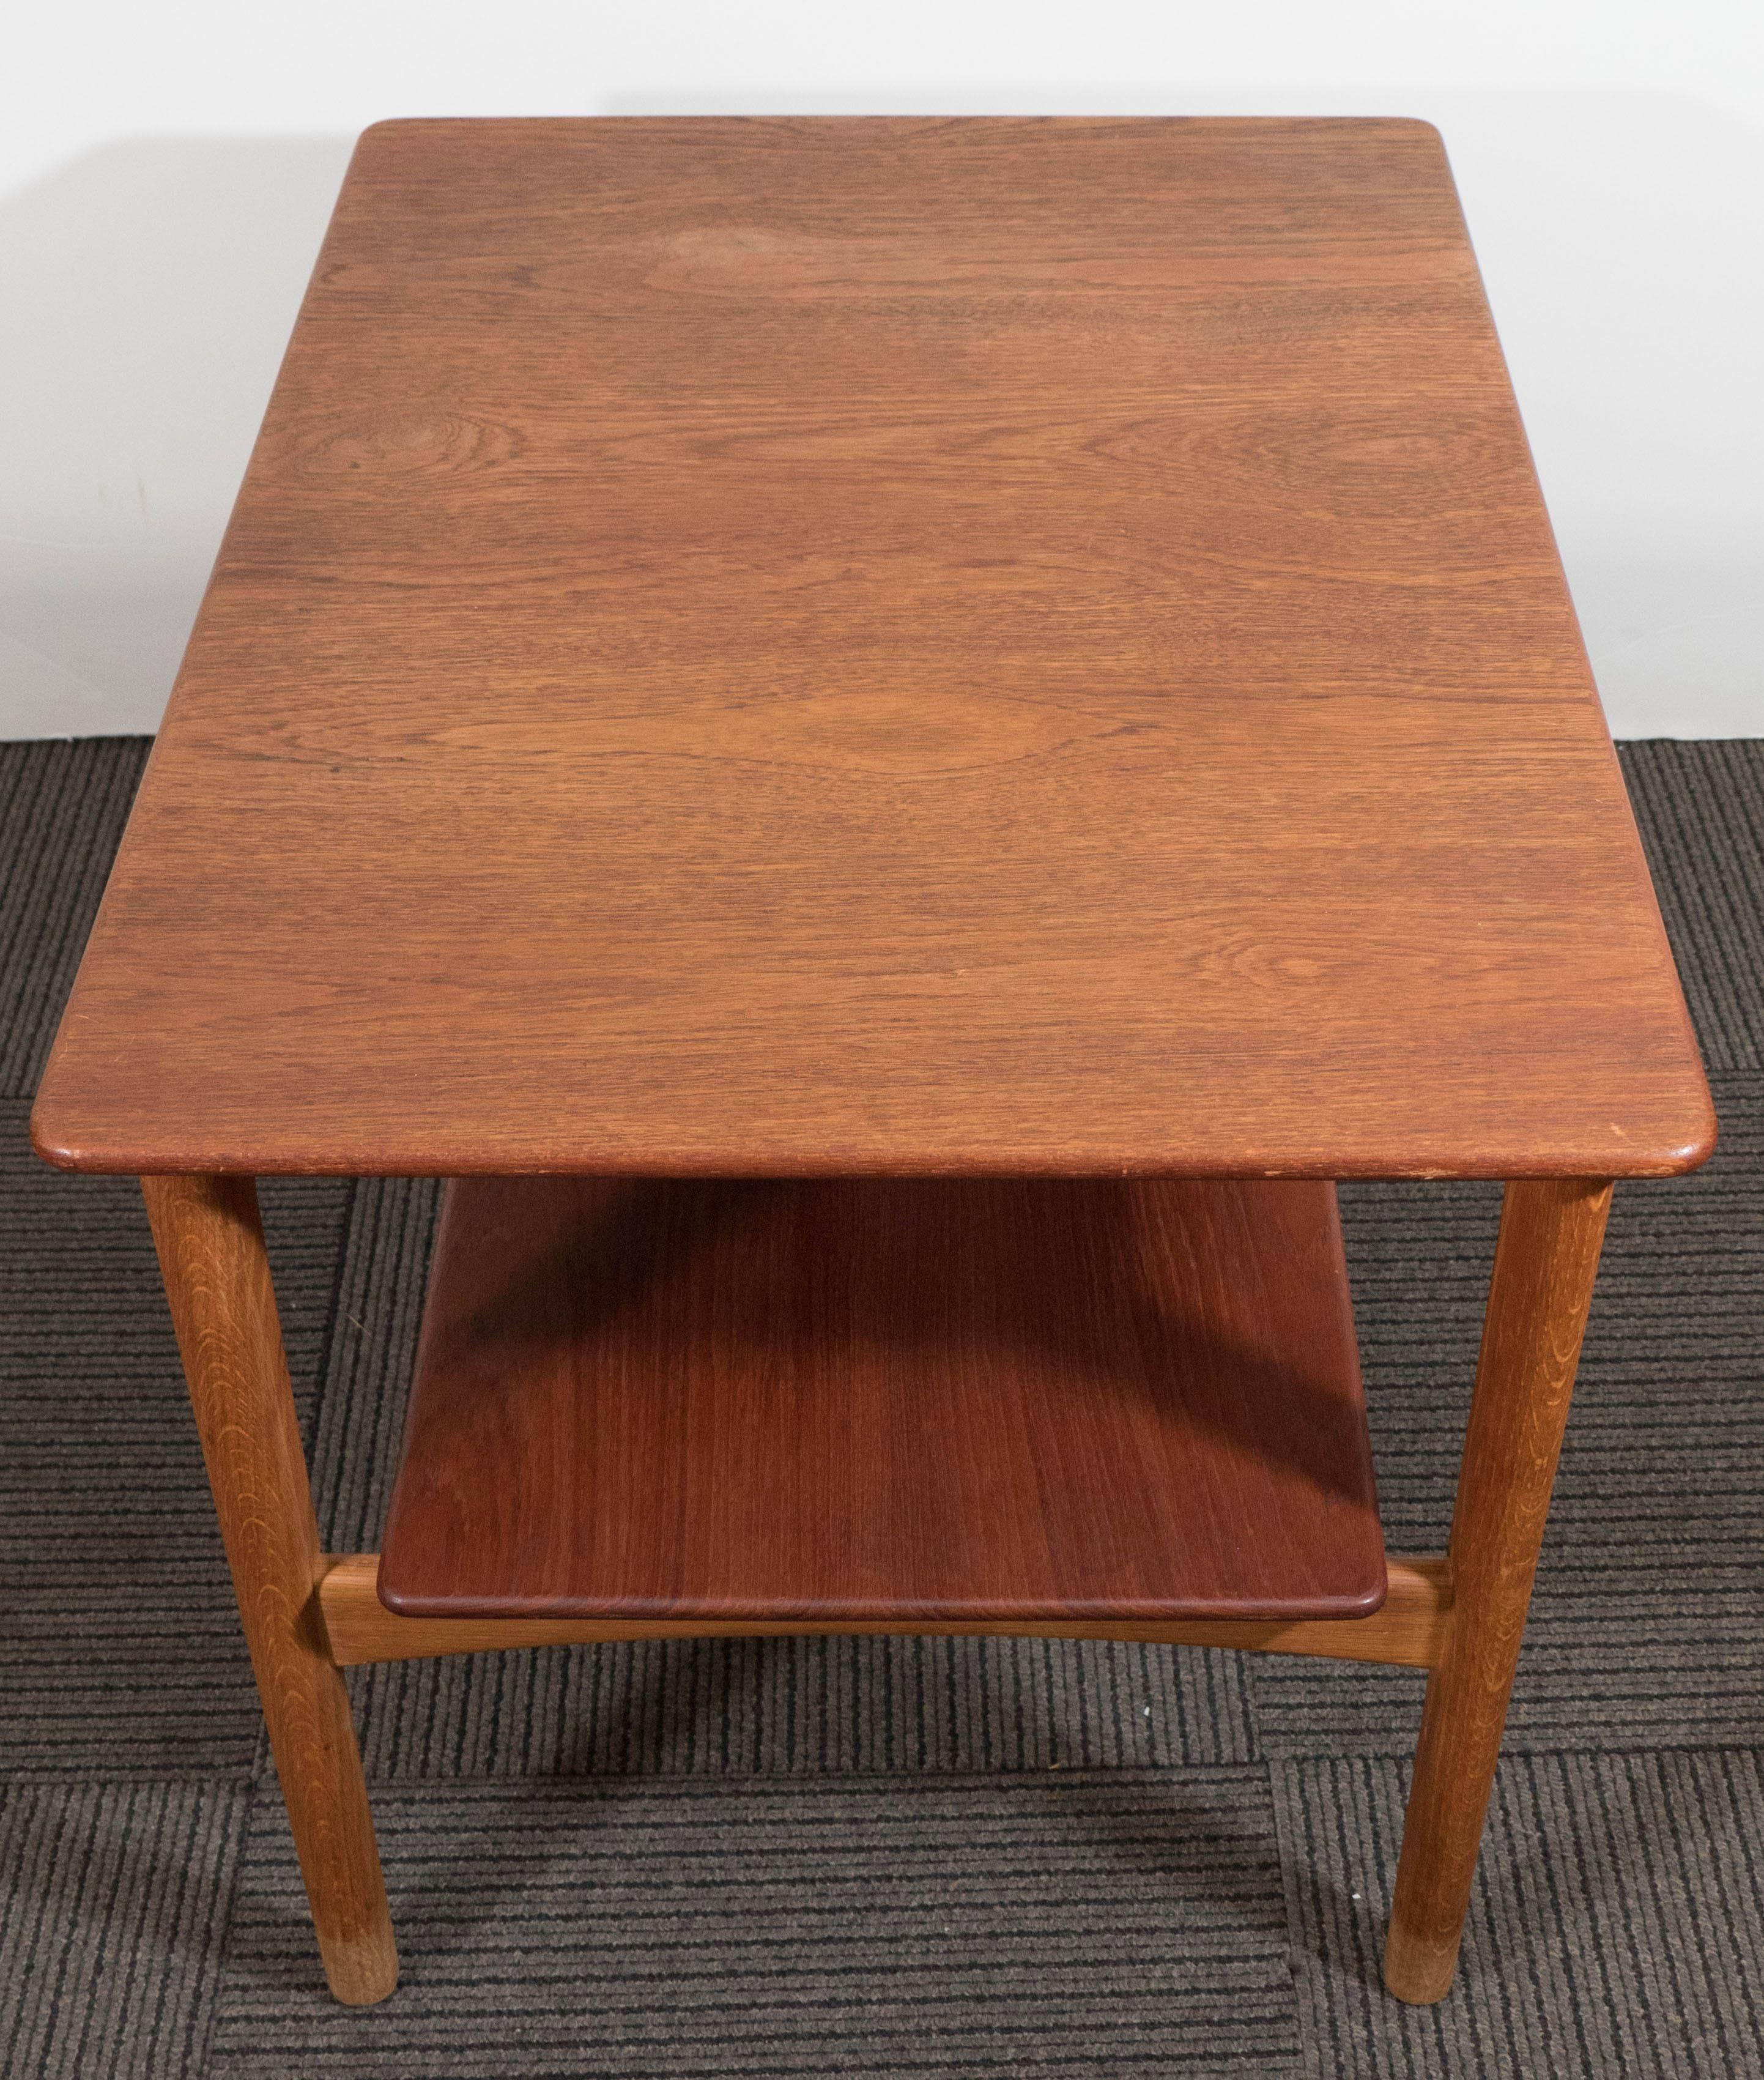 Scandinavian Modern Teak Side Table with Shelf by Johannes Hansen of Denmark 1